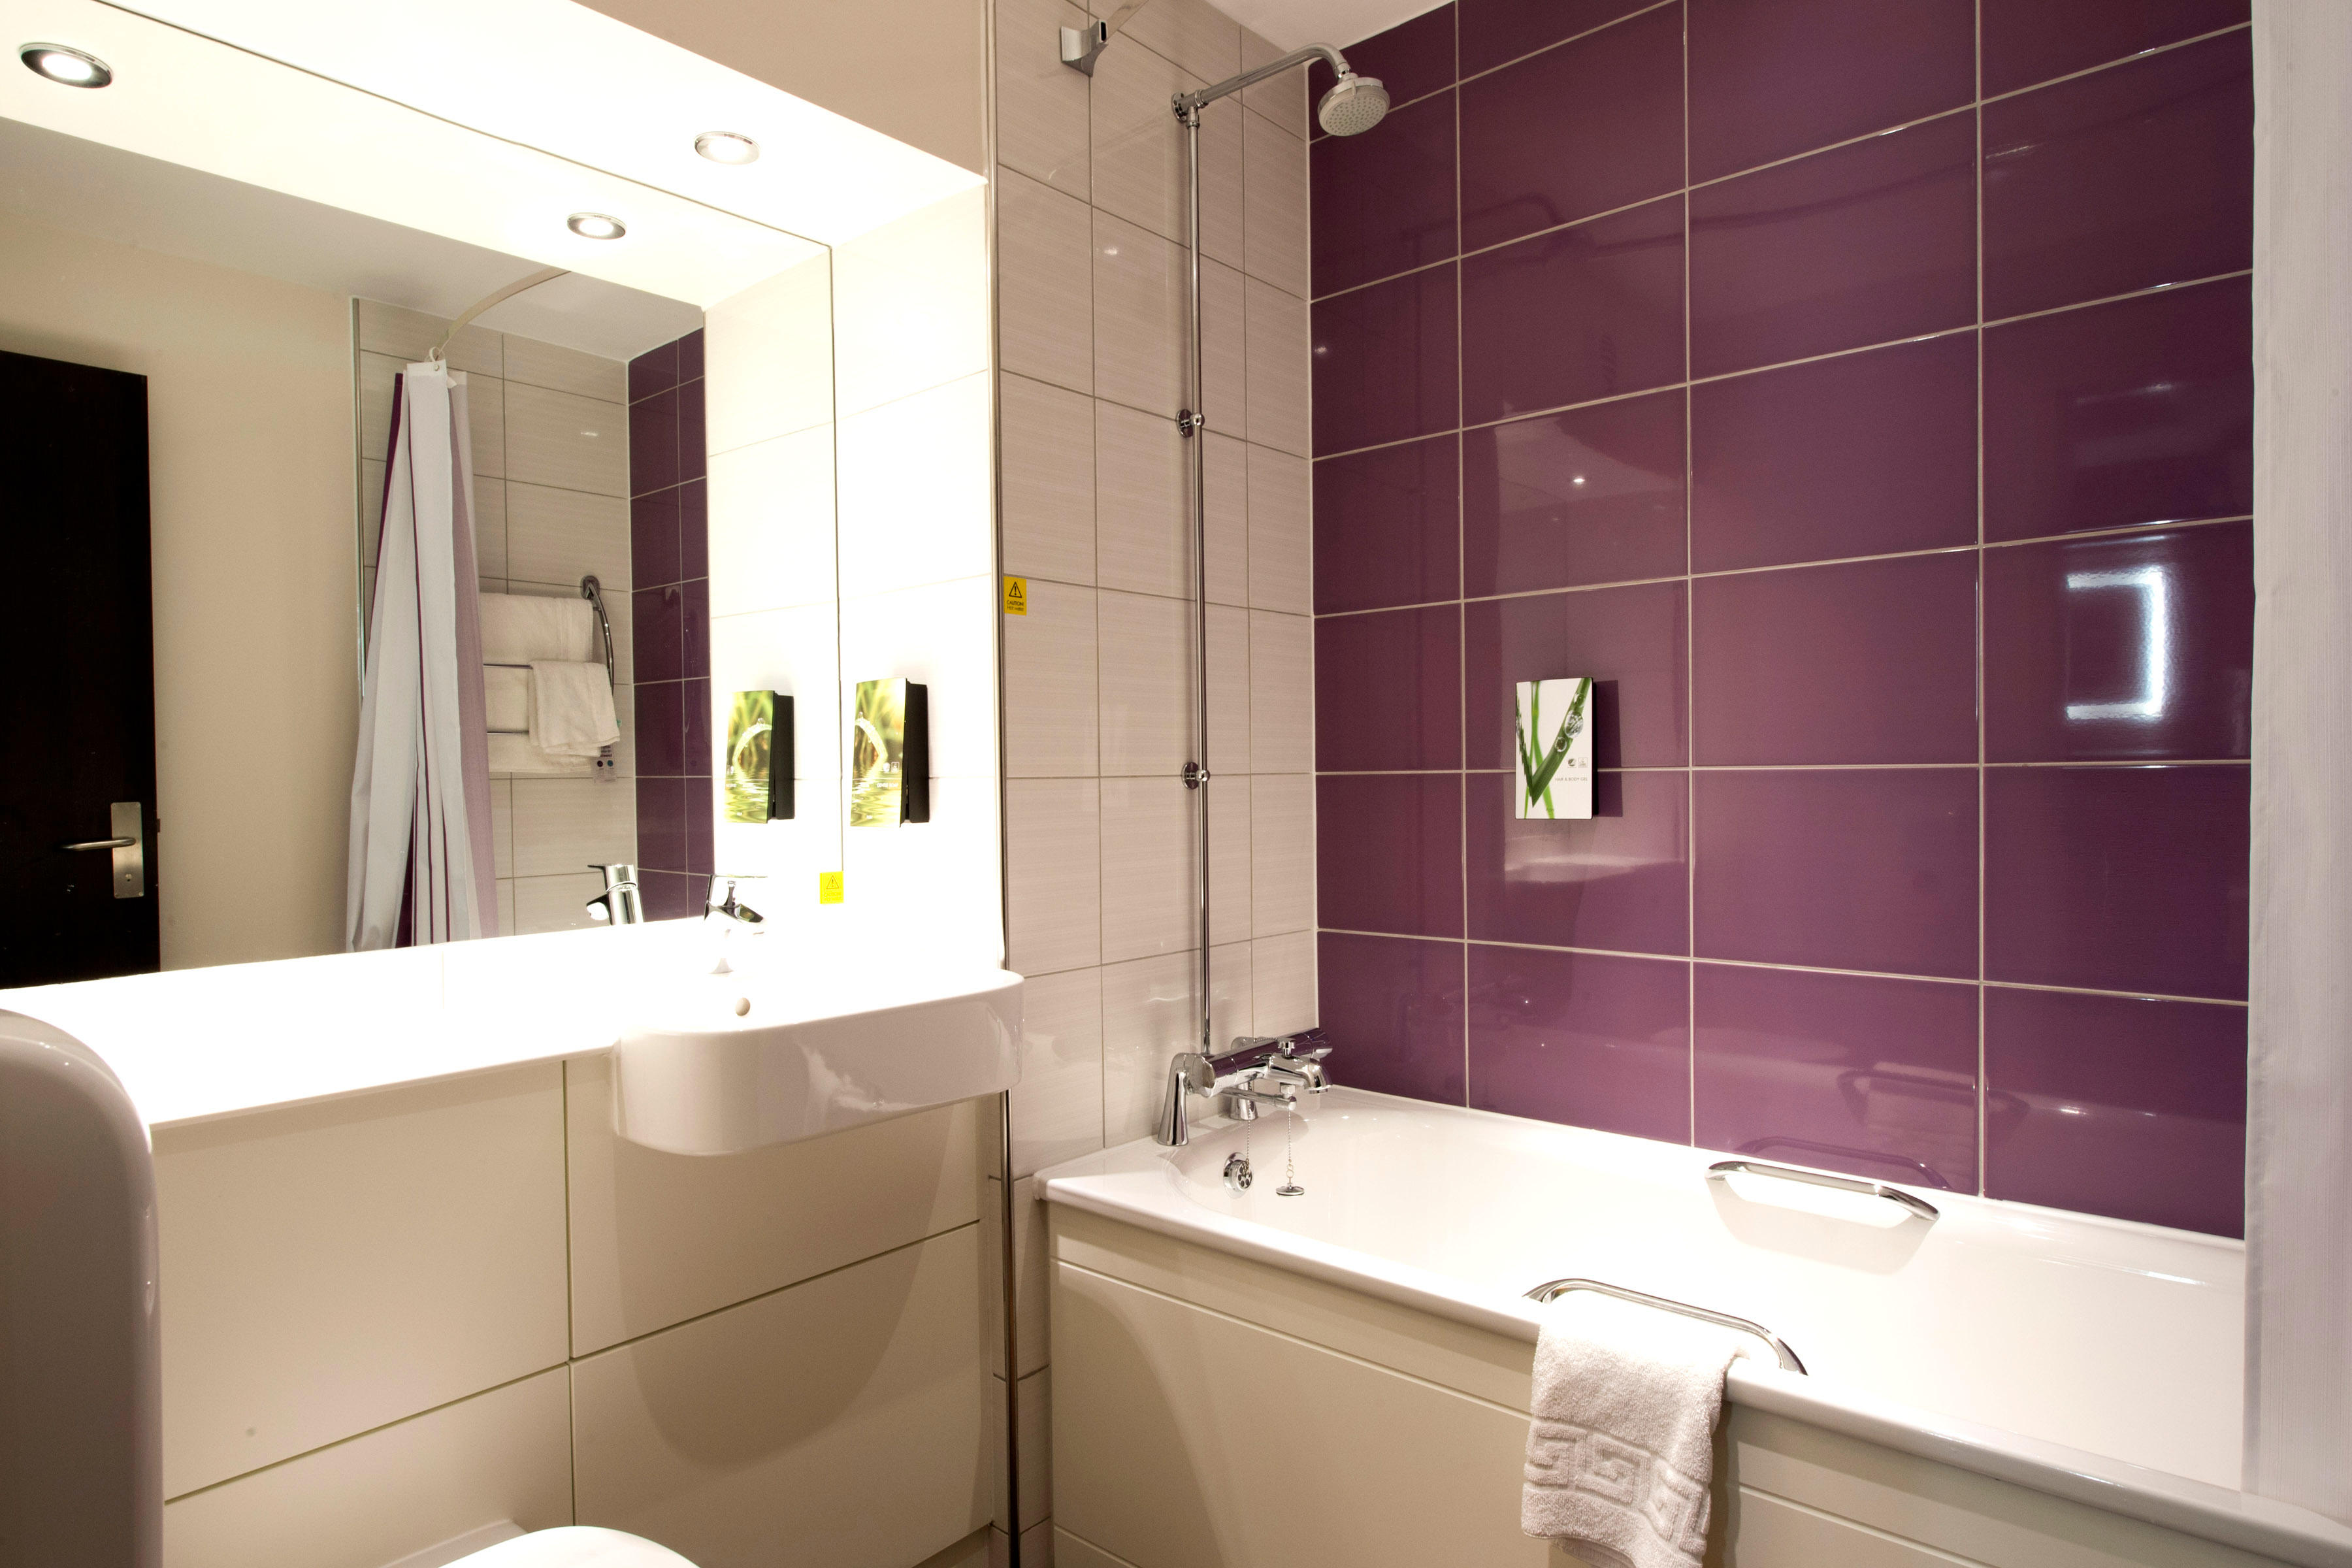 Premier Inn bathroom Premier Inn Sunderland City Centre hotel Sunderland 03330 037893